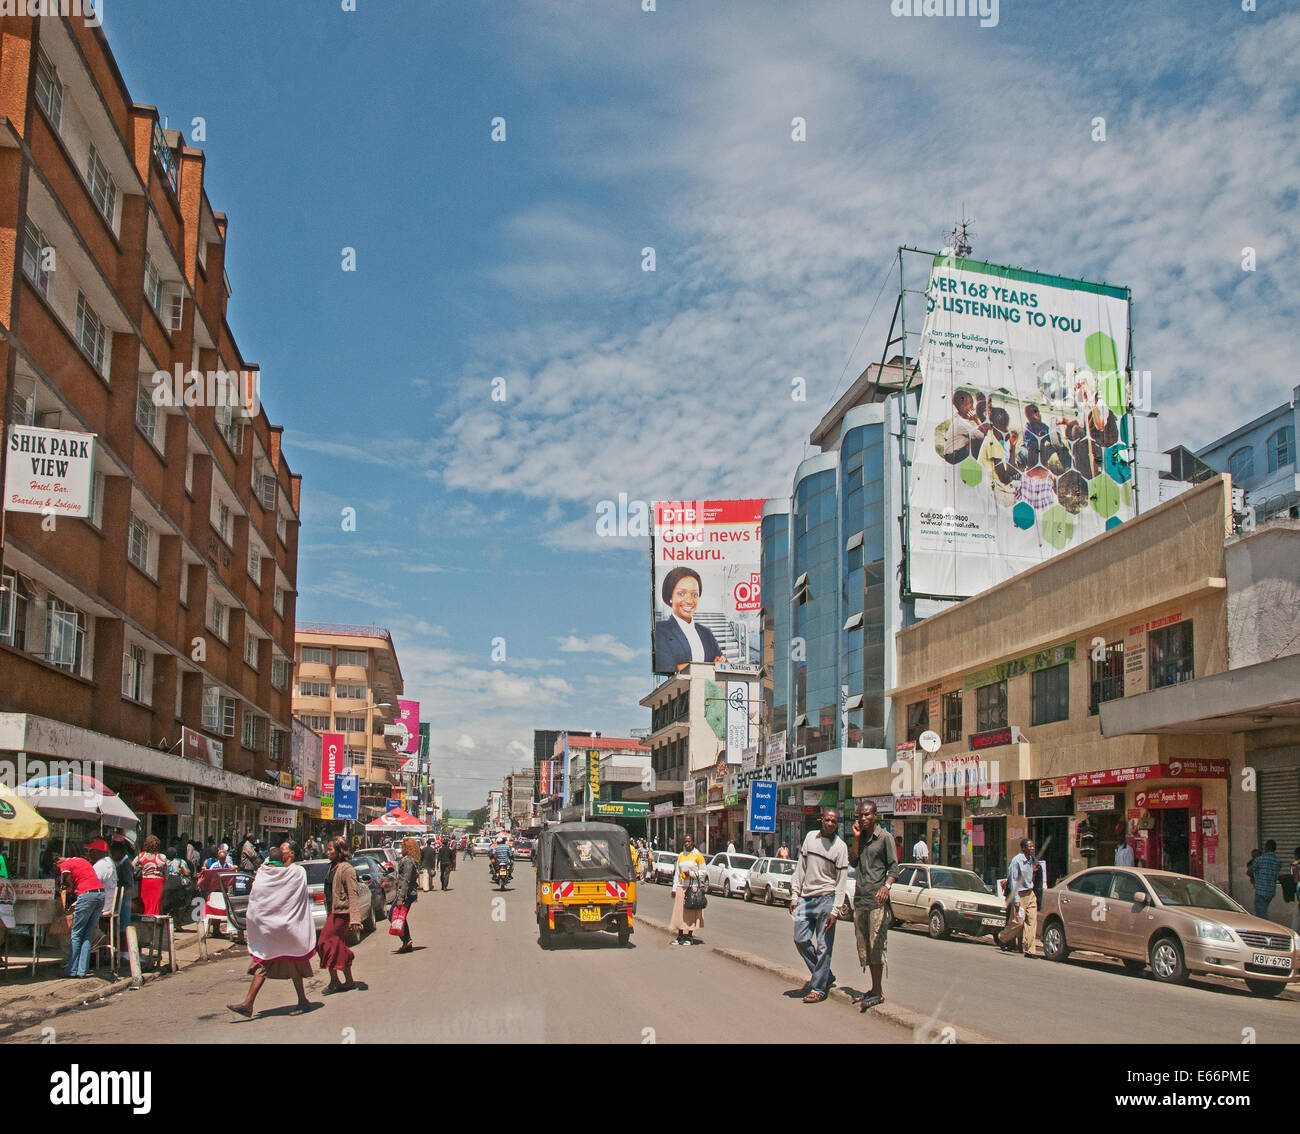 La gente y el tráfico en la avenida Kenyatta Nakuru, Kenya, Africa oriental con vallas publicitarias tiendas y tres ruedas Piaggio Ape taxi Foto de stock